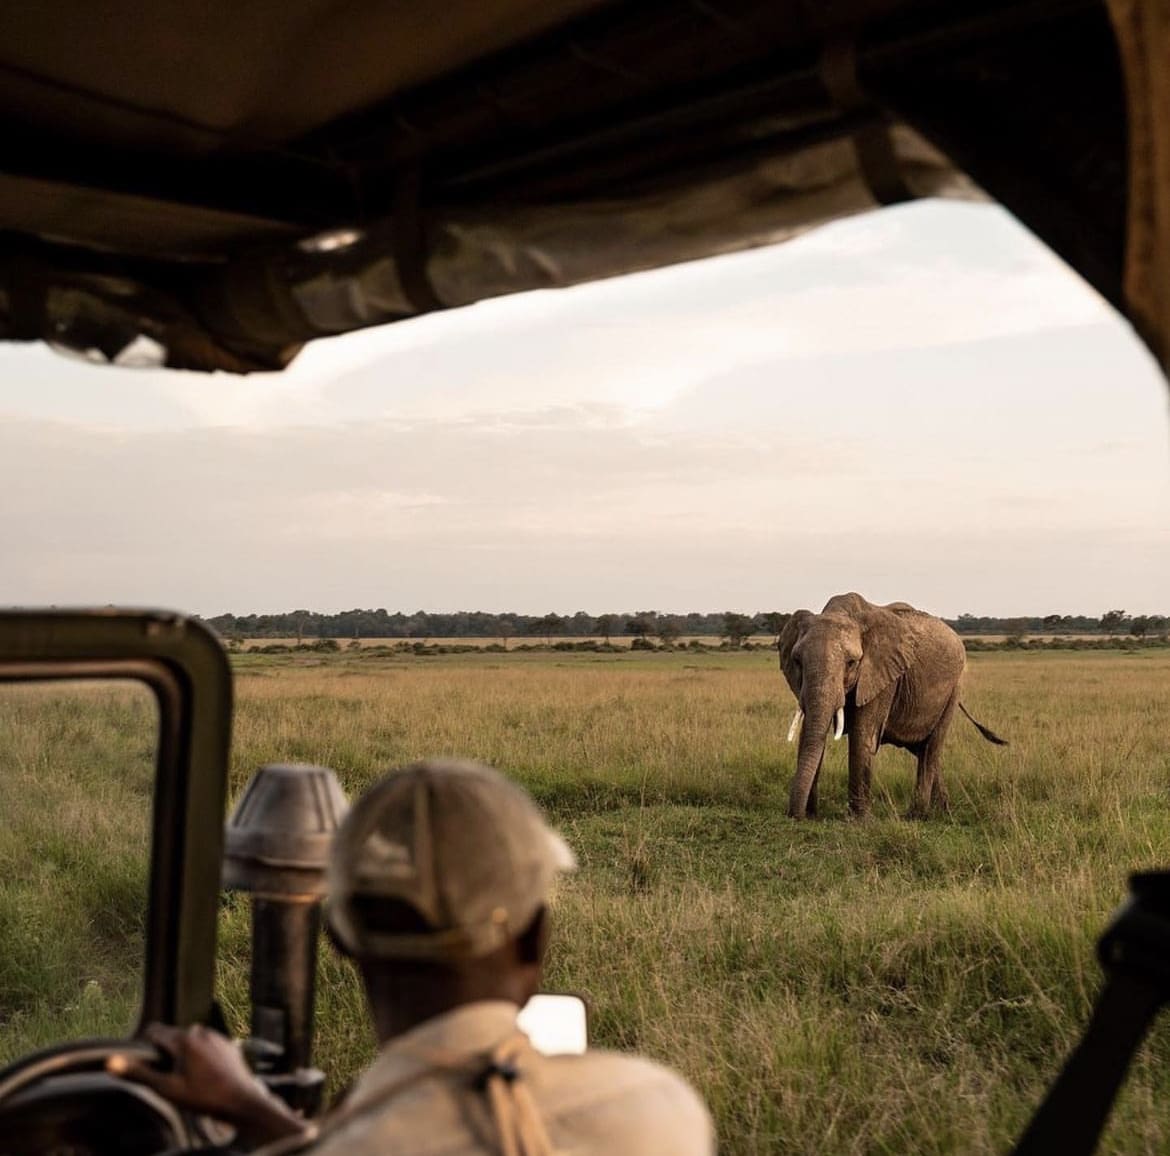 Field guide observing a wild elephant on safari in Kenya